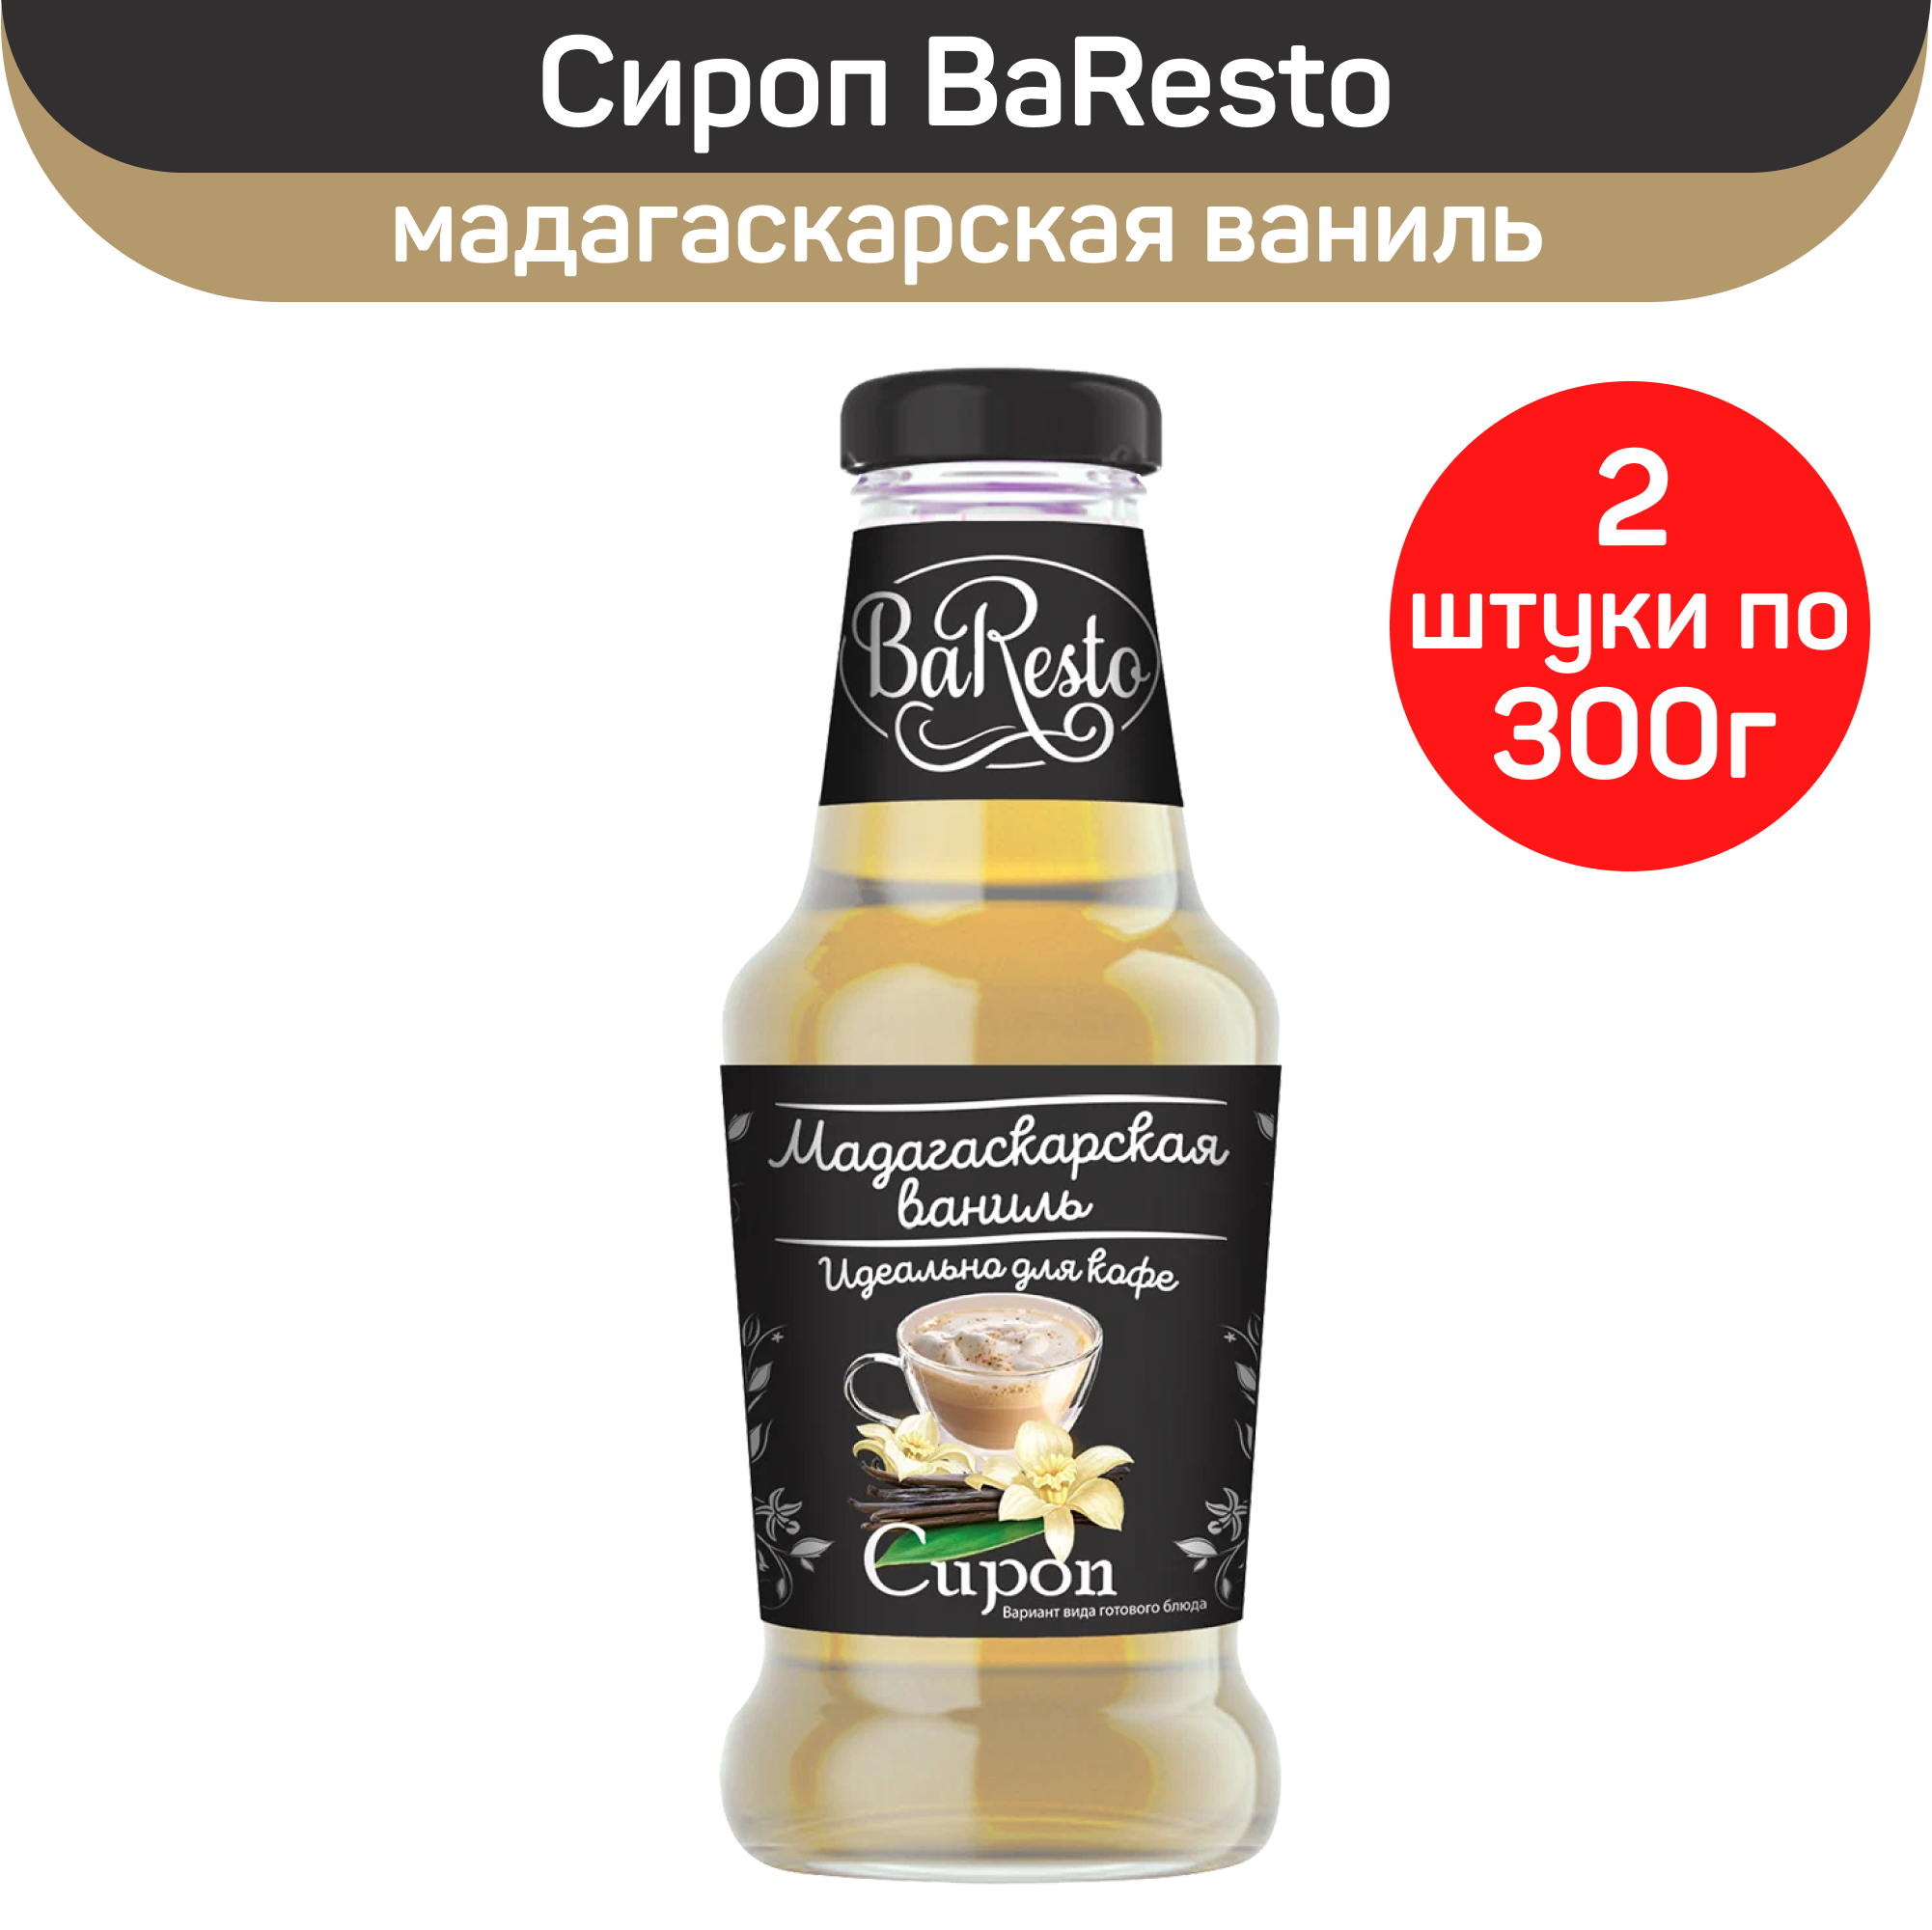 Сироп BaResto "Мадагаскарская ваниль", 2 шт по 300 г